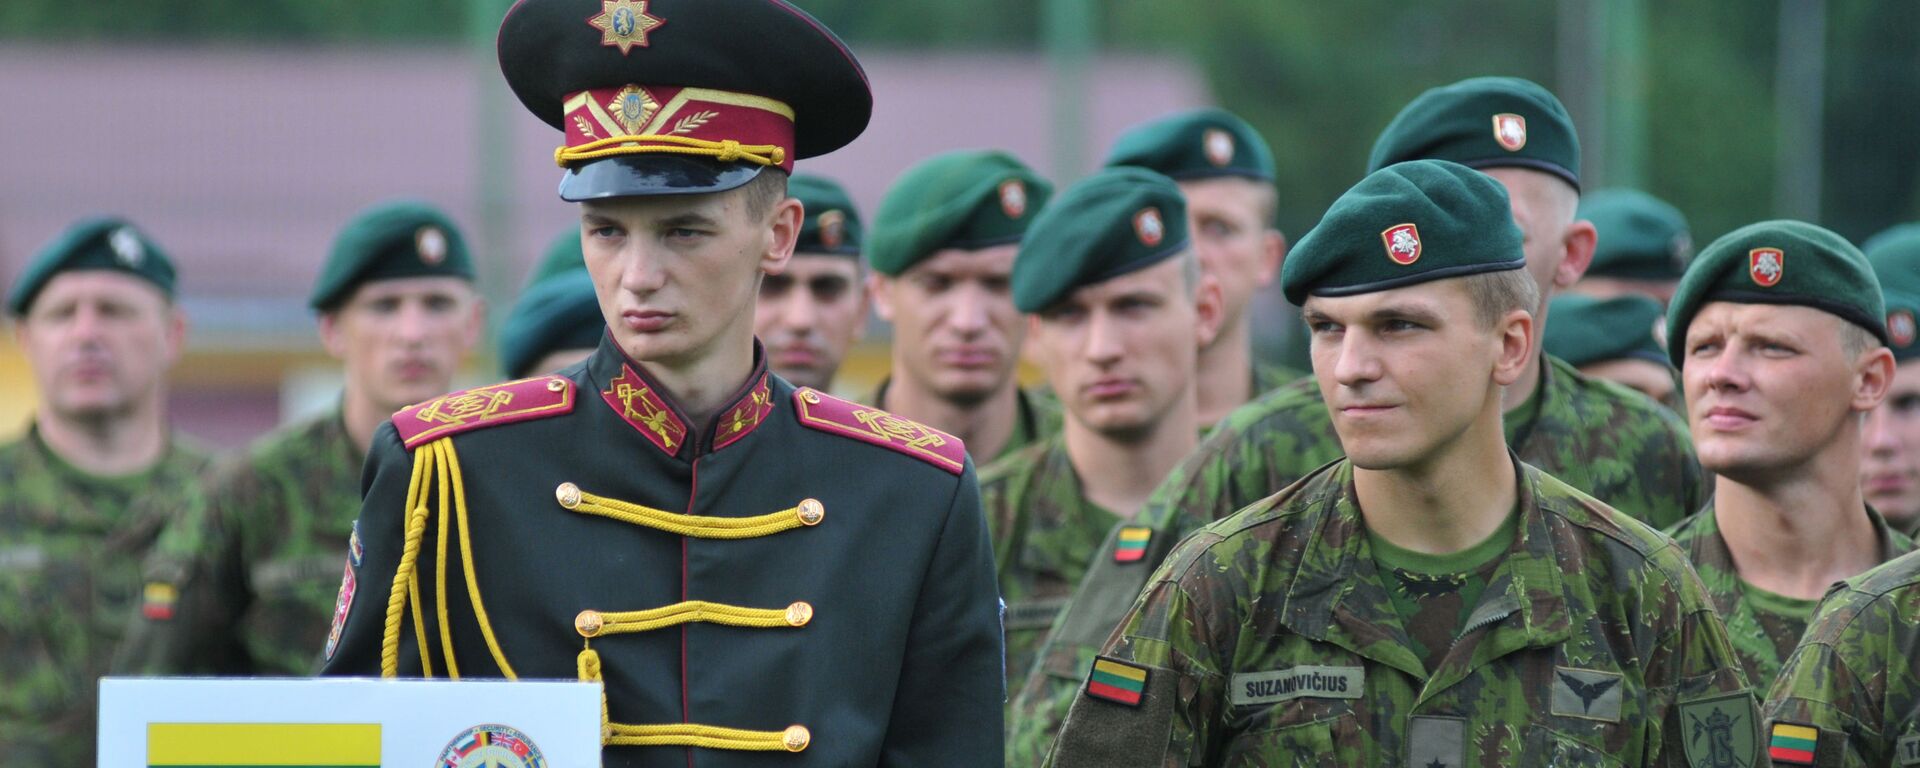 Литовские военнослужащие на церемонии открытия военных учений на Украине - Sputnik Латвия, 1920, 20.12.2021